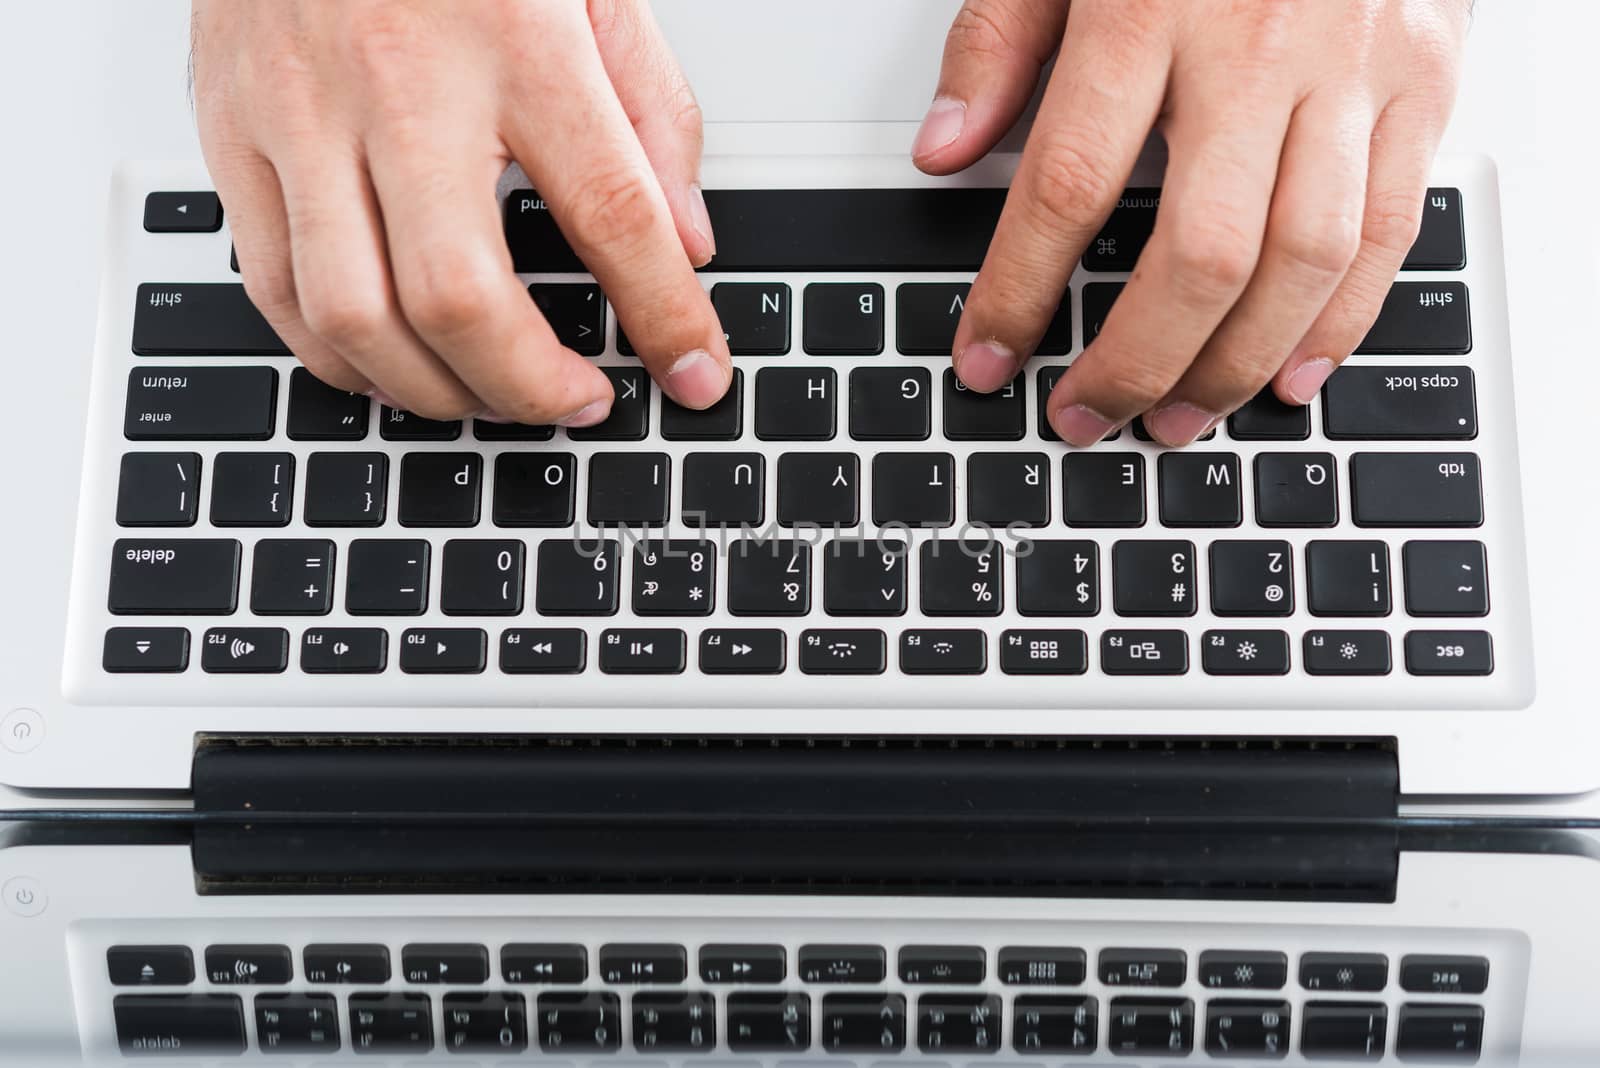 Hand typing on laptop keyboard by Sorapop